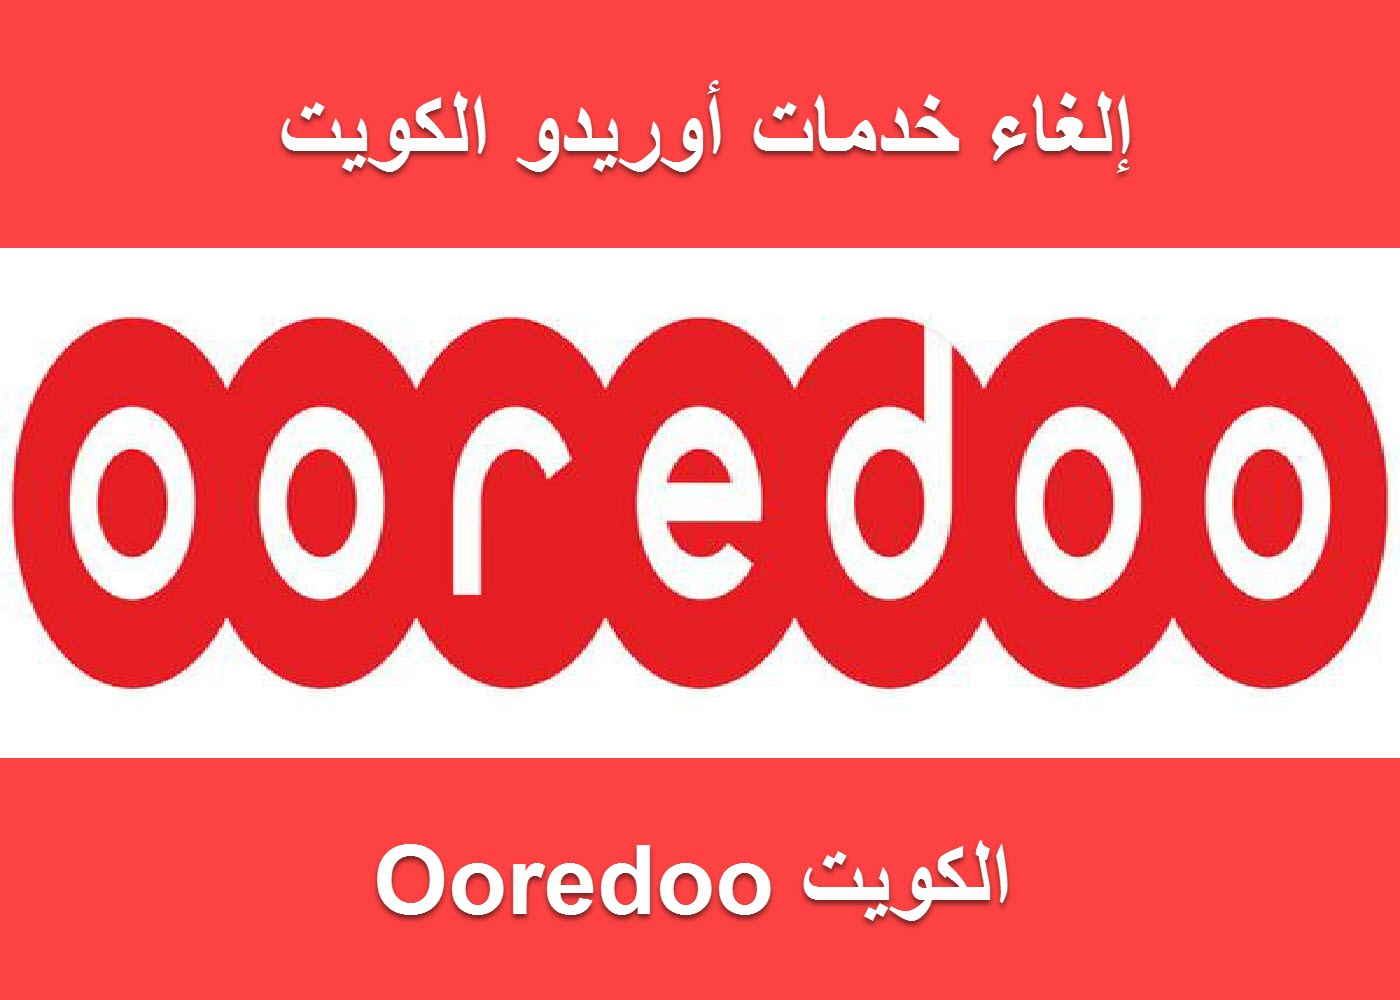 رقم أوريدو الكويت من أجل التحدث مع موظفي خدمة العملاء لخدمات المحمول